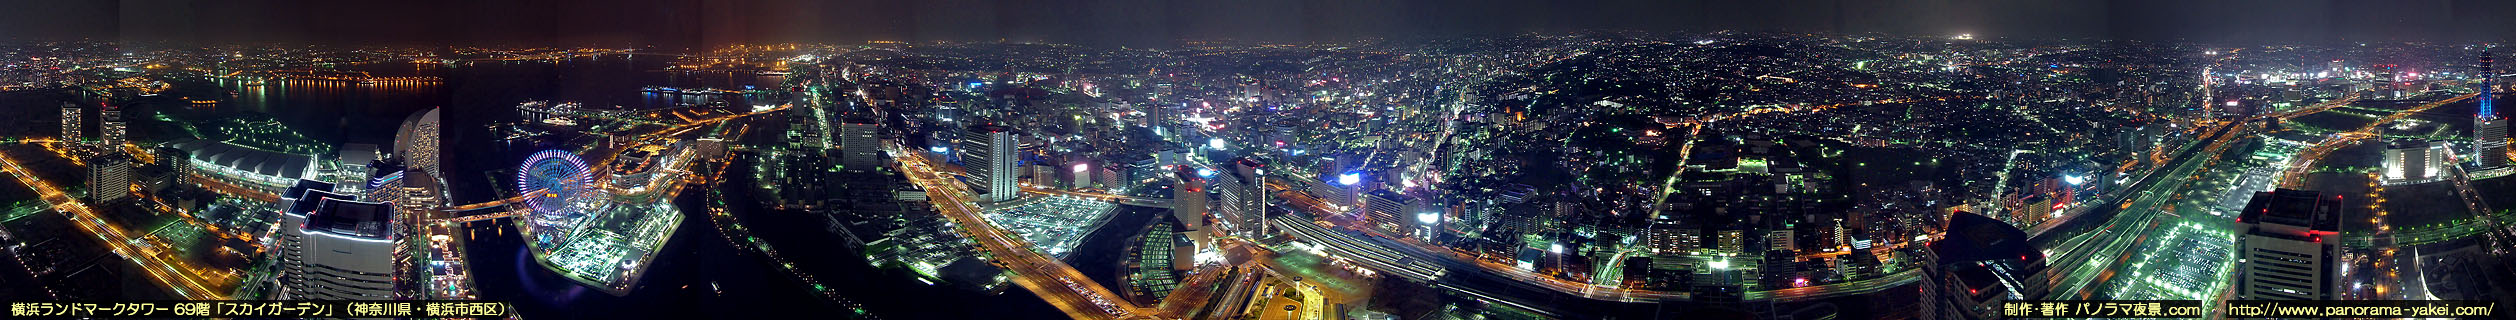 横浜ランドマークタワー69階「スカイガーデン」からの360度パノラマ夜景写真